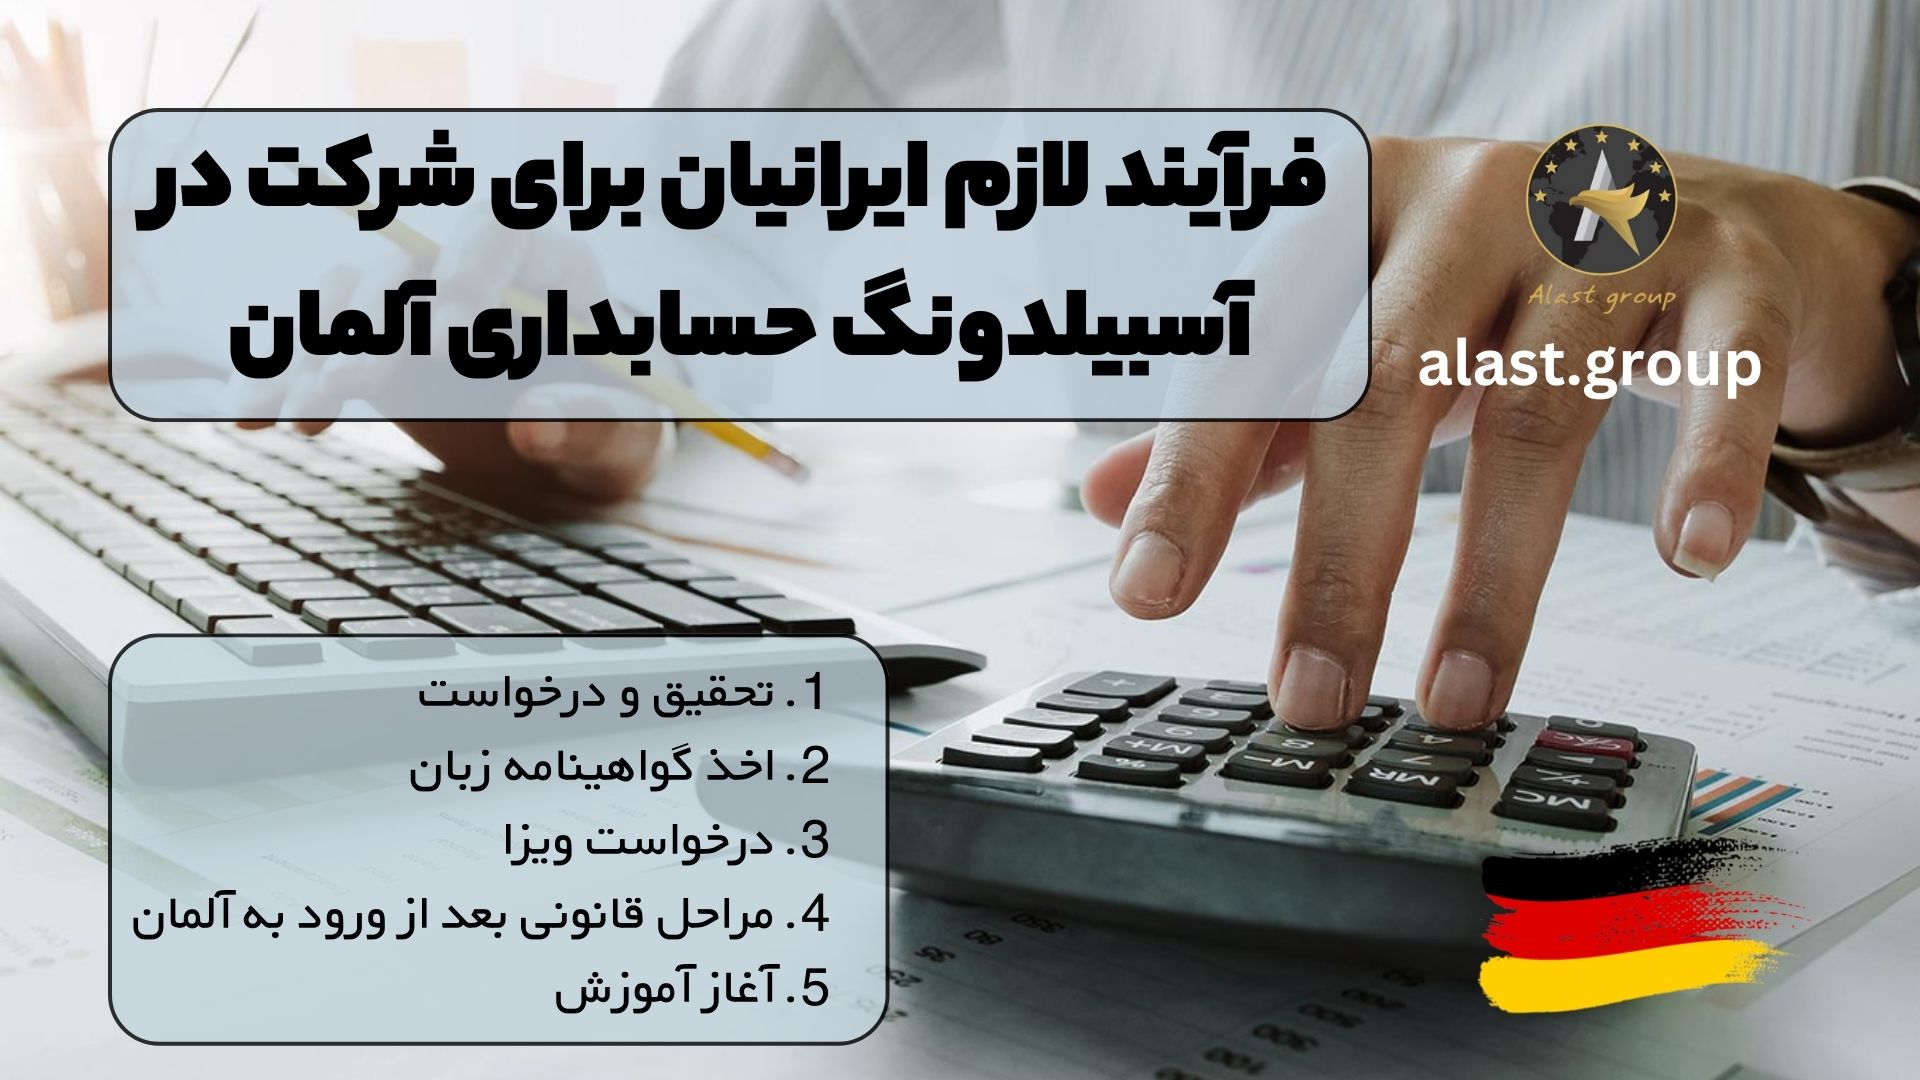 فرآیند لازم ایرانیان برای شرکت در آسبیلدونگ حسابداری آلمان